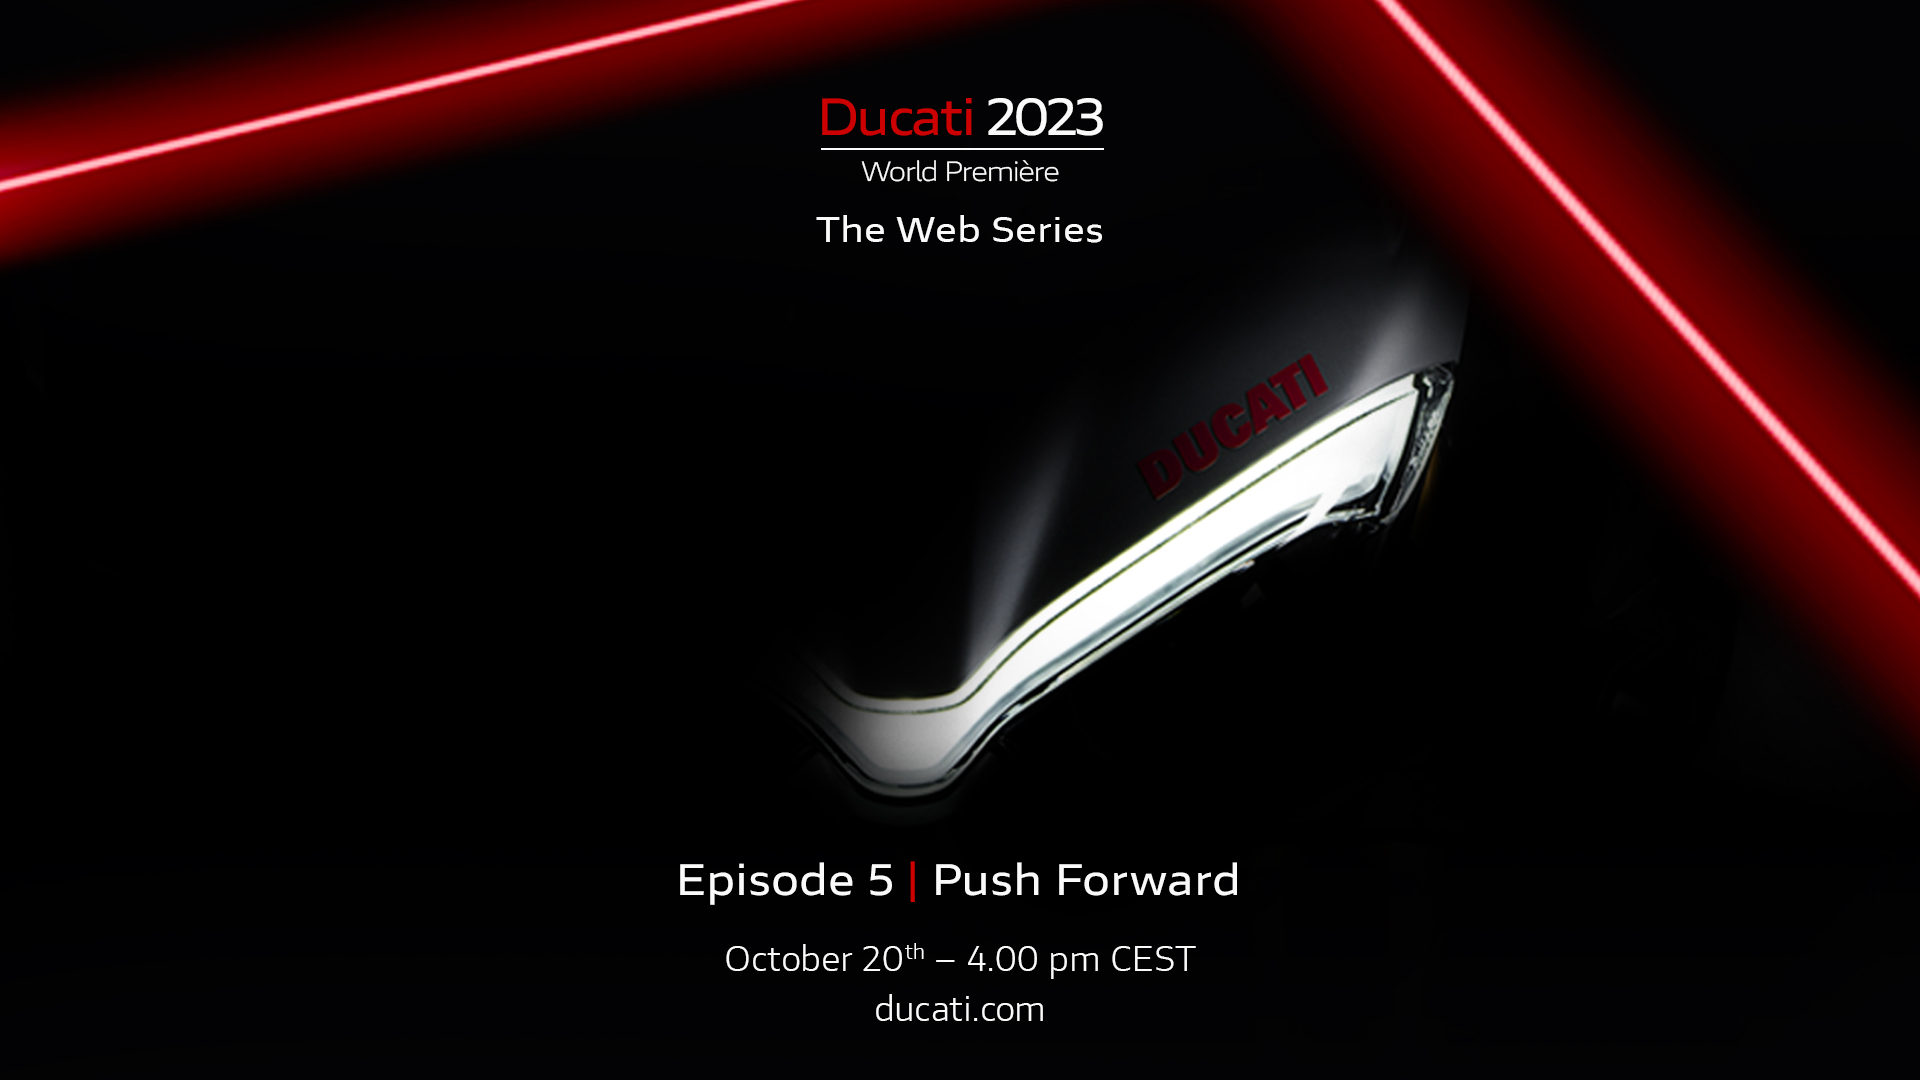 5° episodio – 20 ottobre 22 16:00 – Push Forward – Ducati World Premiere 2023